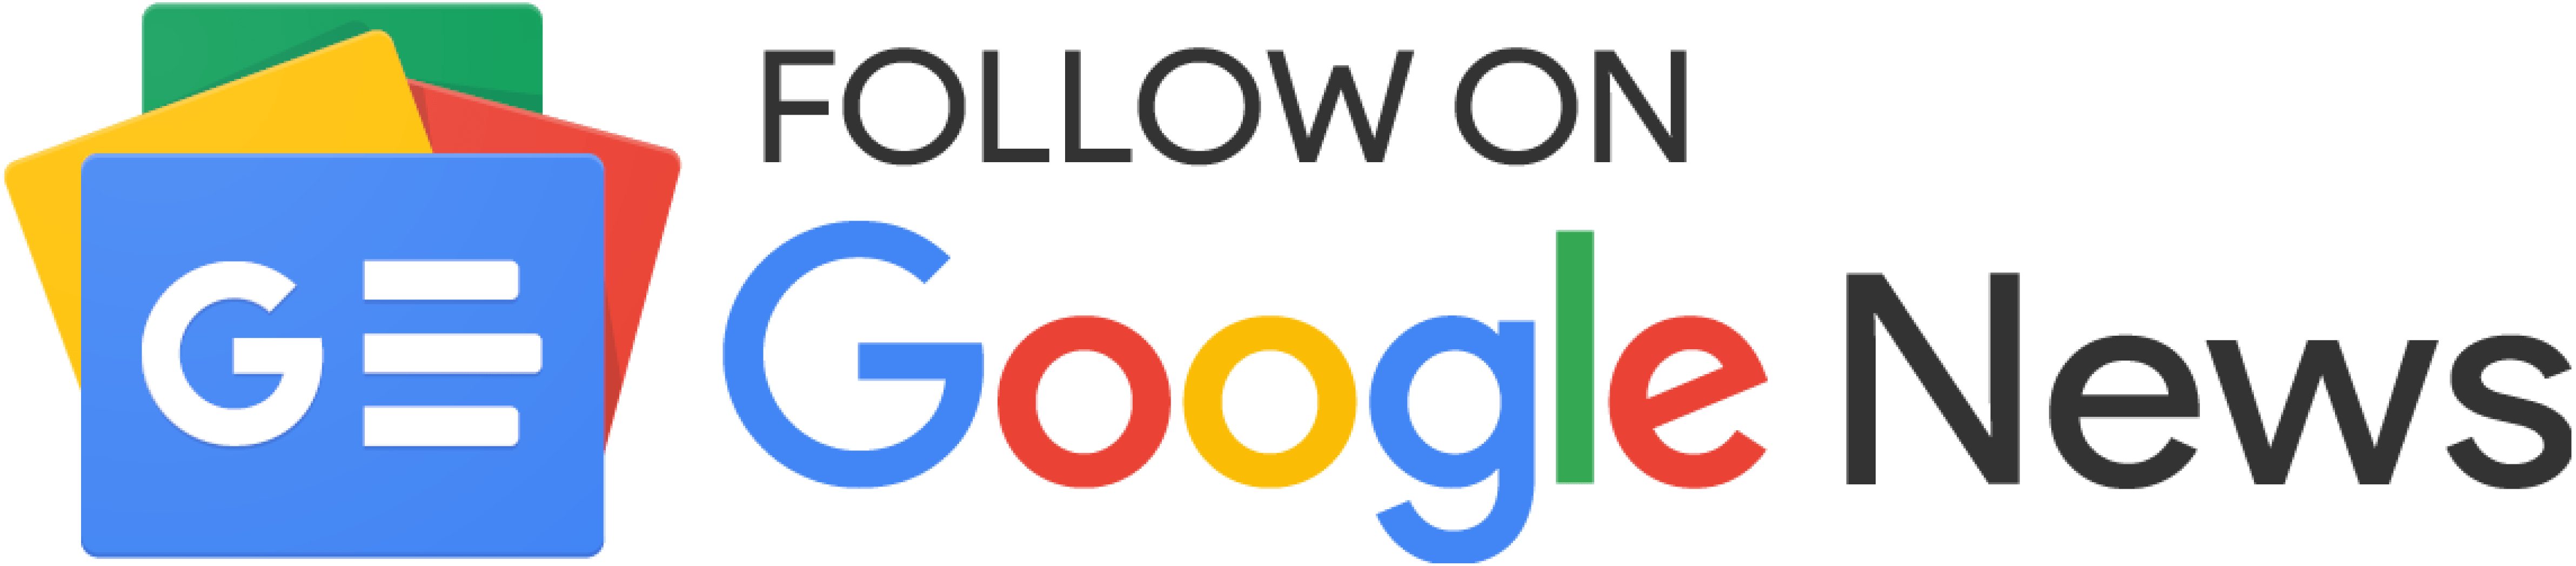 TechvBlogs - Google News